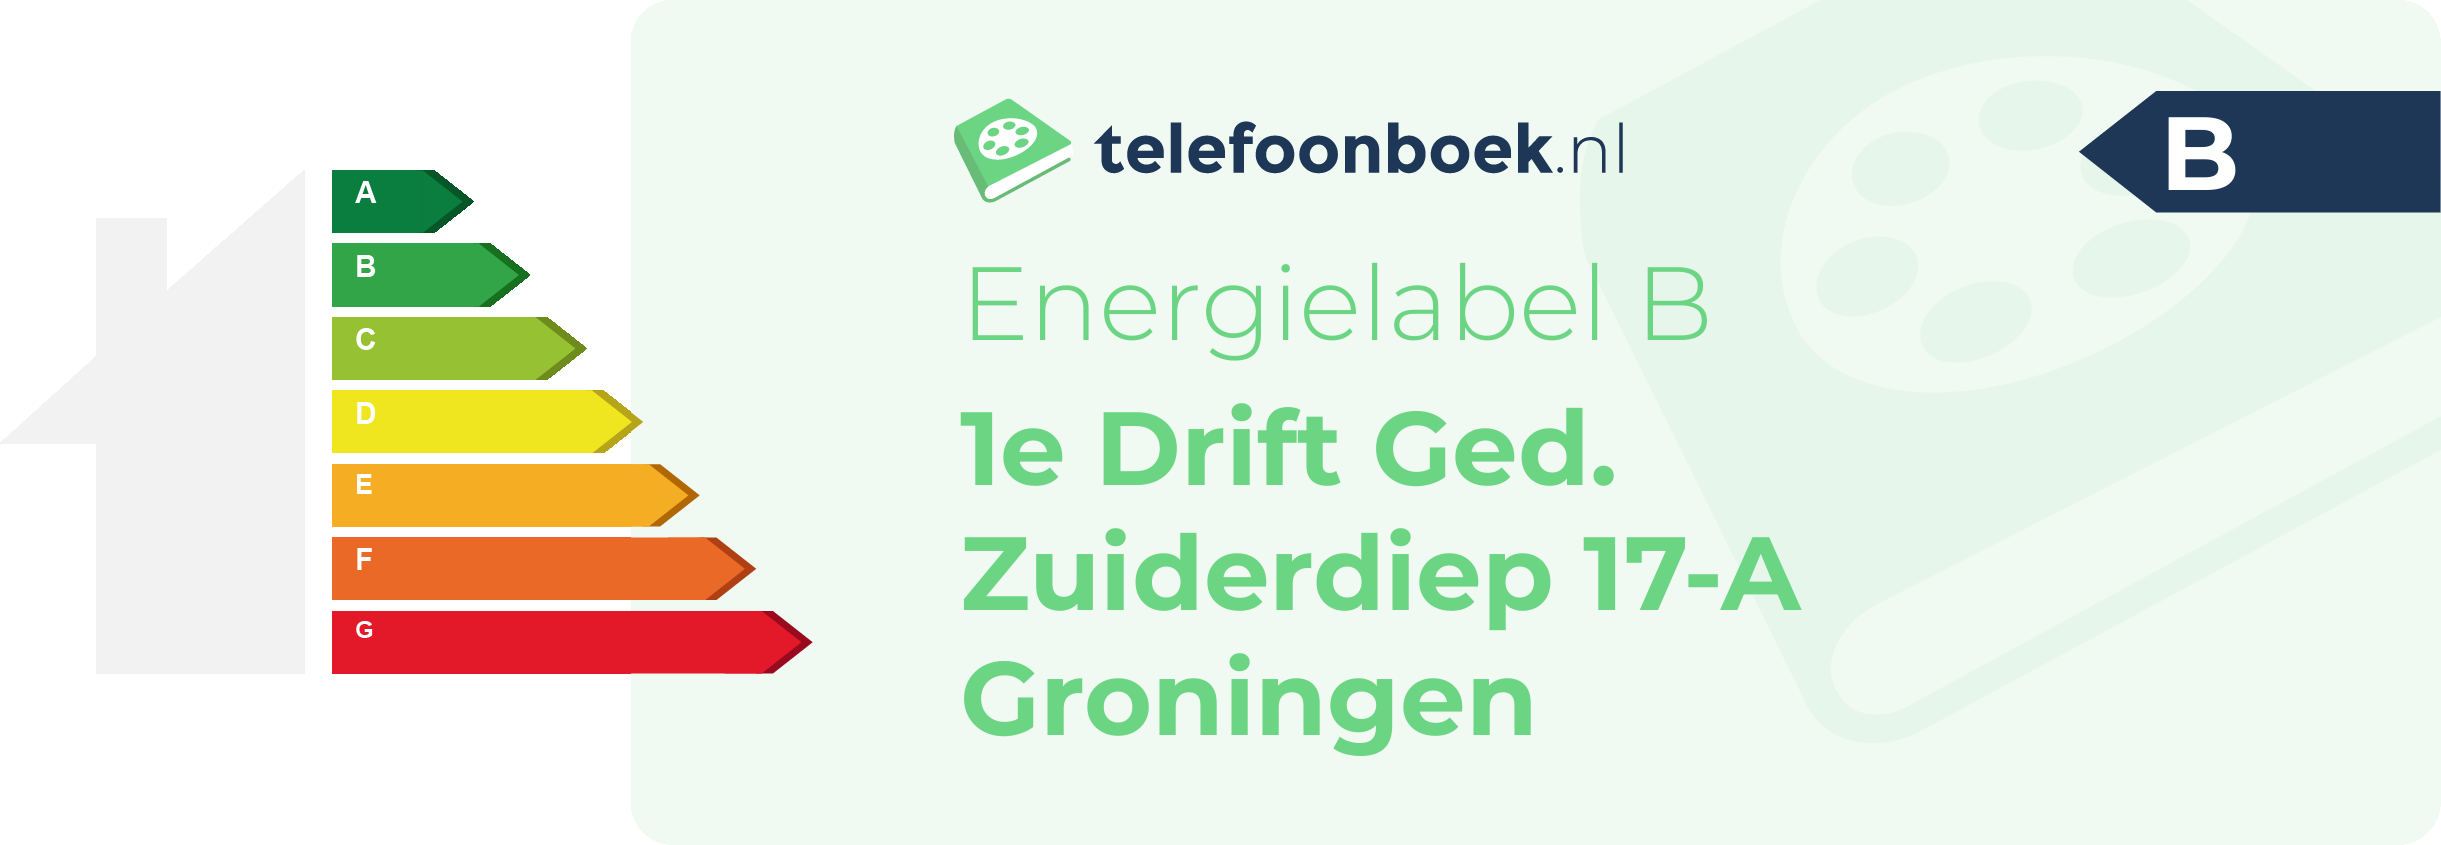 Energielabel 1e Drift Ged. Zuiderdiep 17-A Groningen